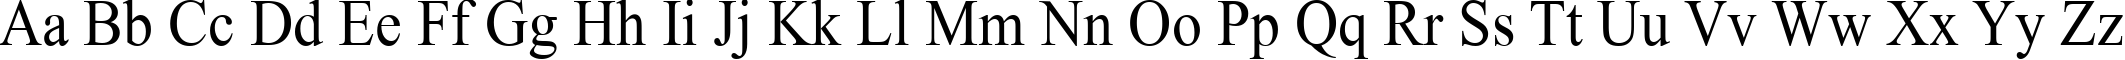 Пример написания английского алфавита шрифтом Times New Roman90n